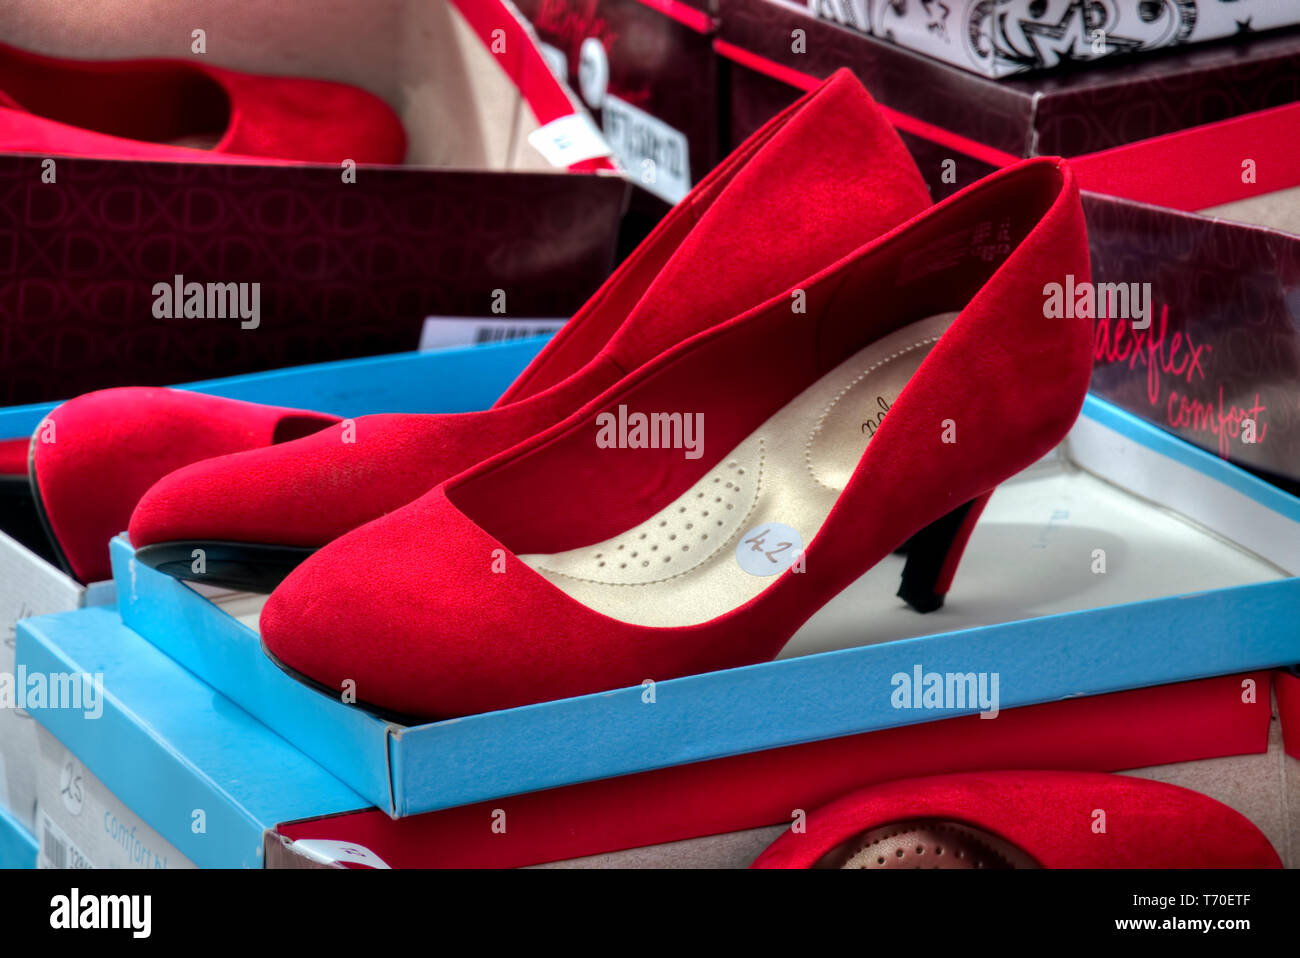 Tacones de gamuza roja utilizado en un caminar una milla en sus zapatos campaña de sensibilización para la igualdad de género. Foto de stock